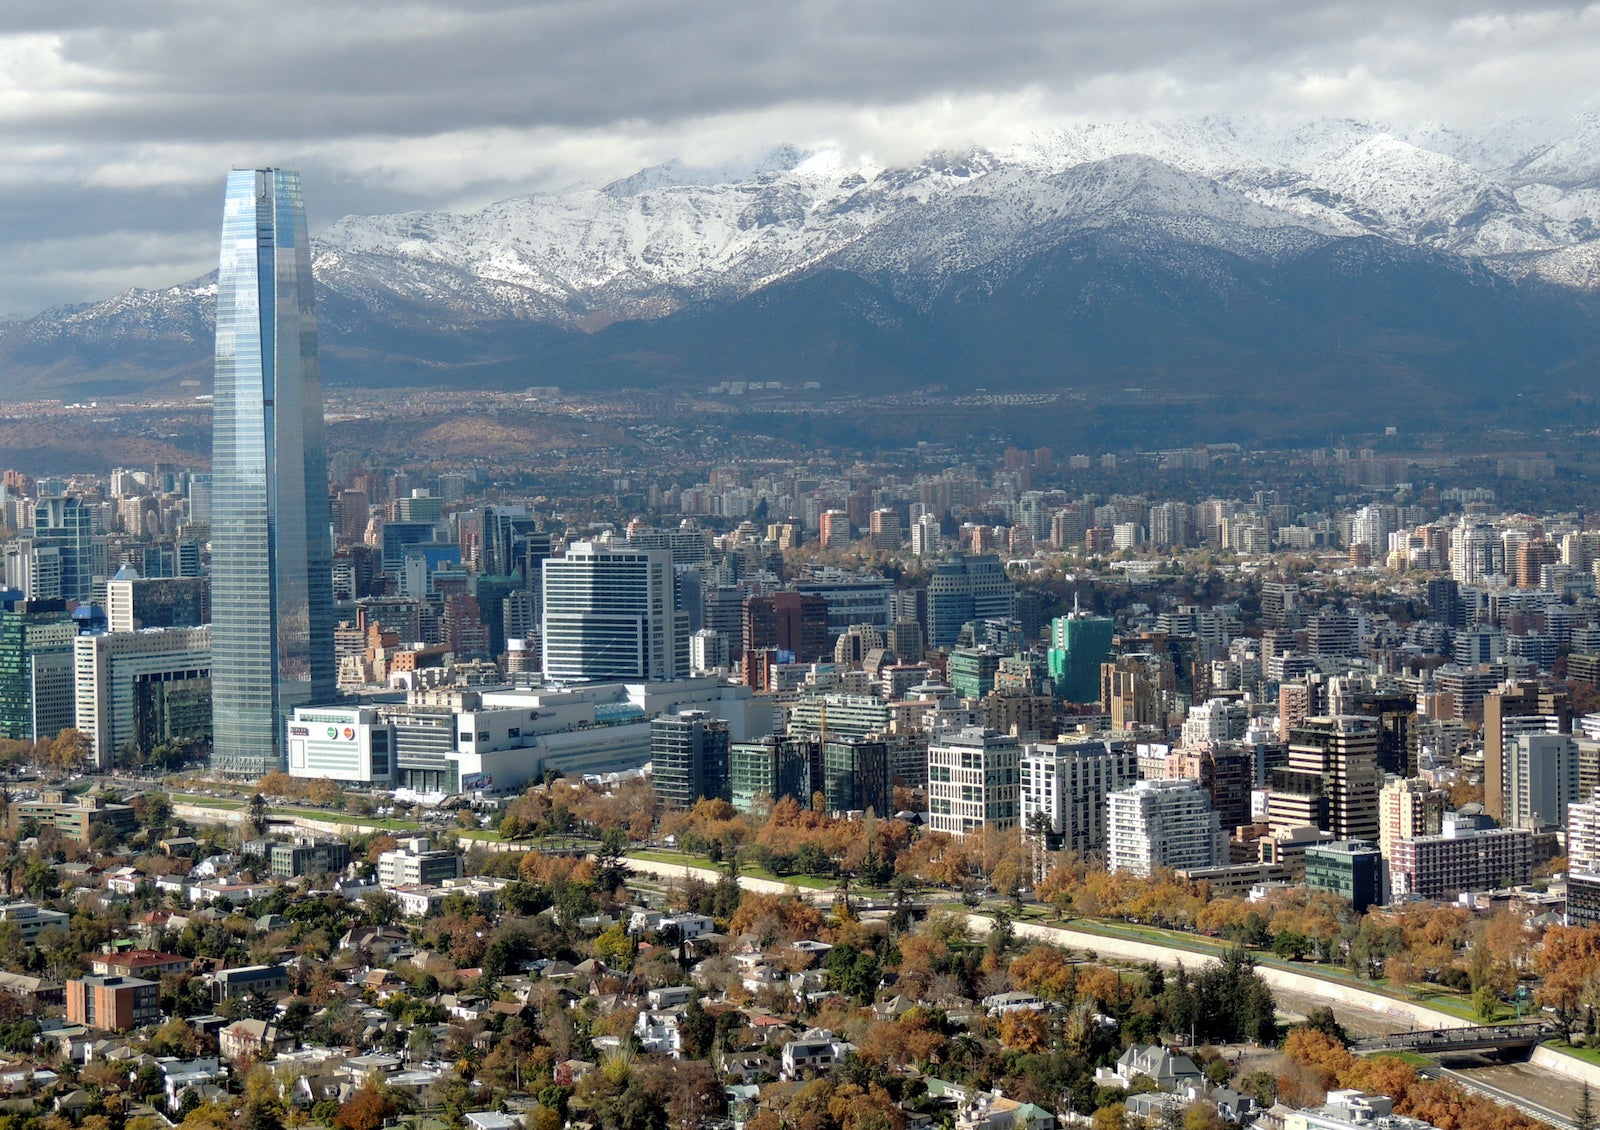 Clean wide city skyline of Santiago de Chile